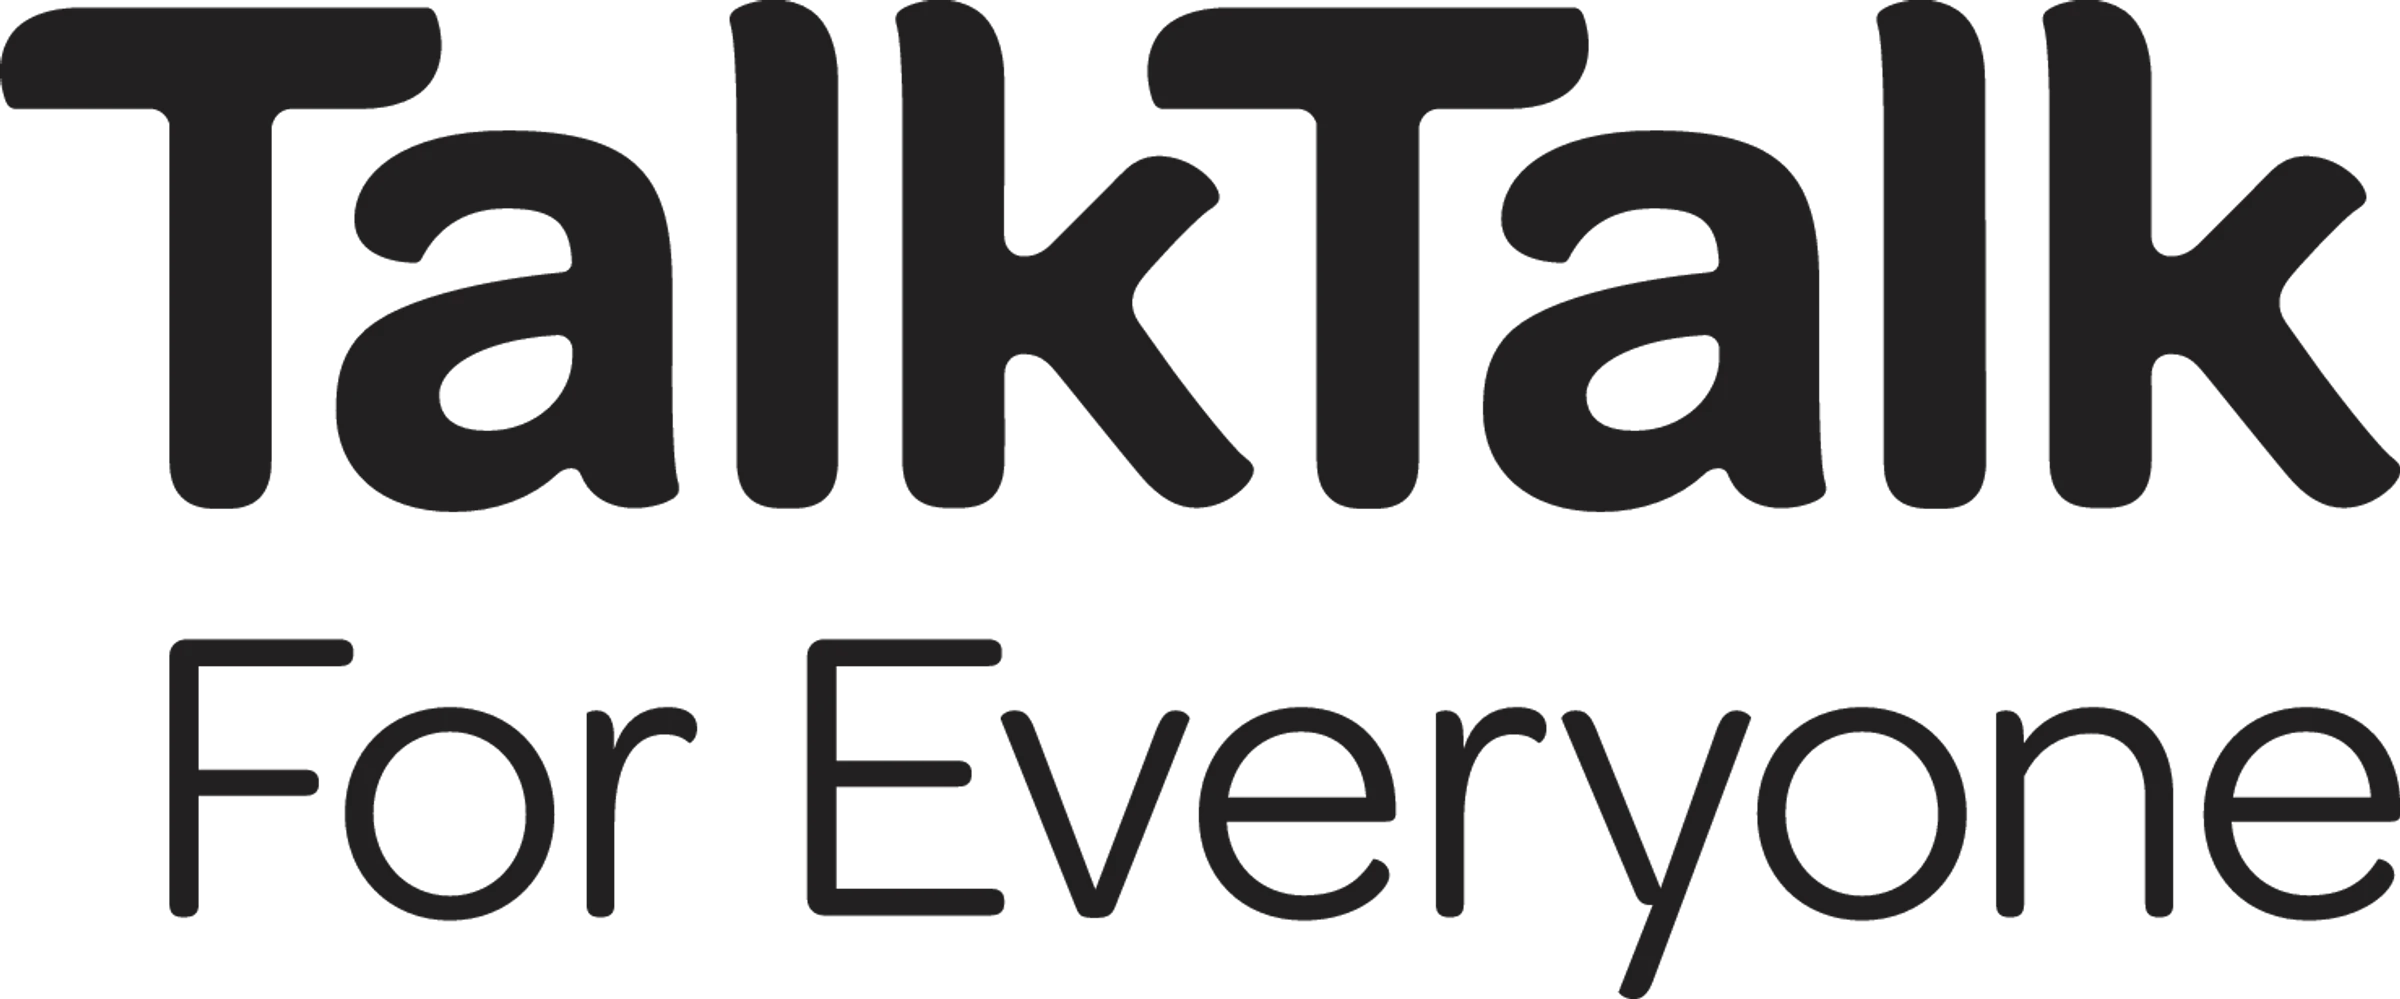 Talktalk Deals For New Customers & Discounts